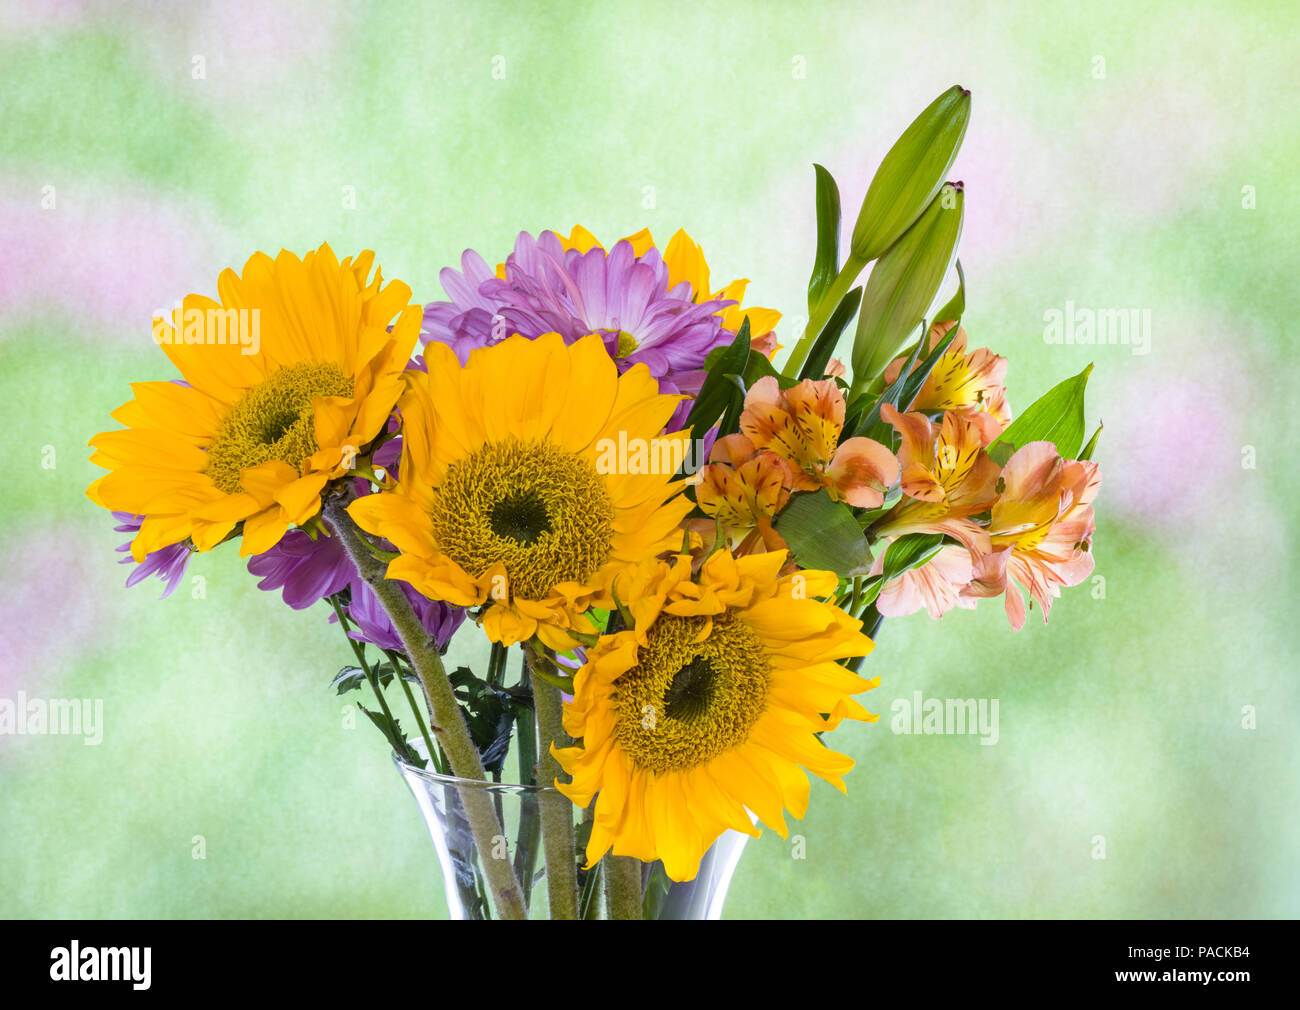 Attraente disposizione bouquet di fiori multi colore in chiaro a vaso di vetro Foto Stock